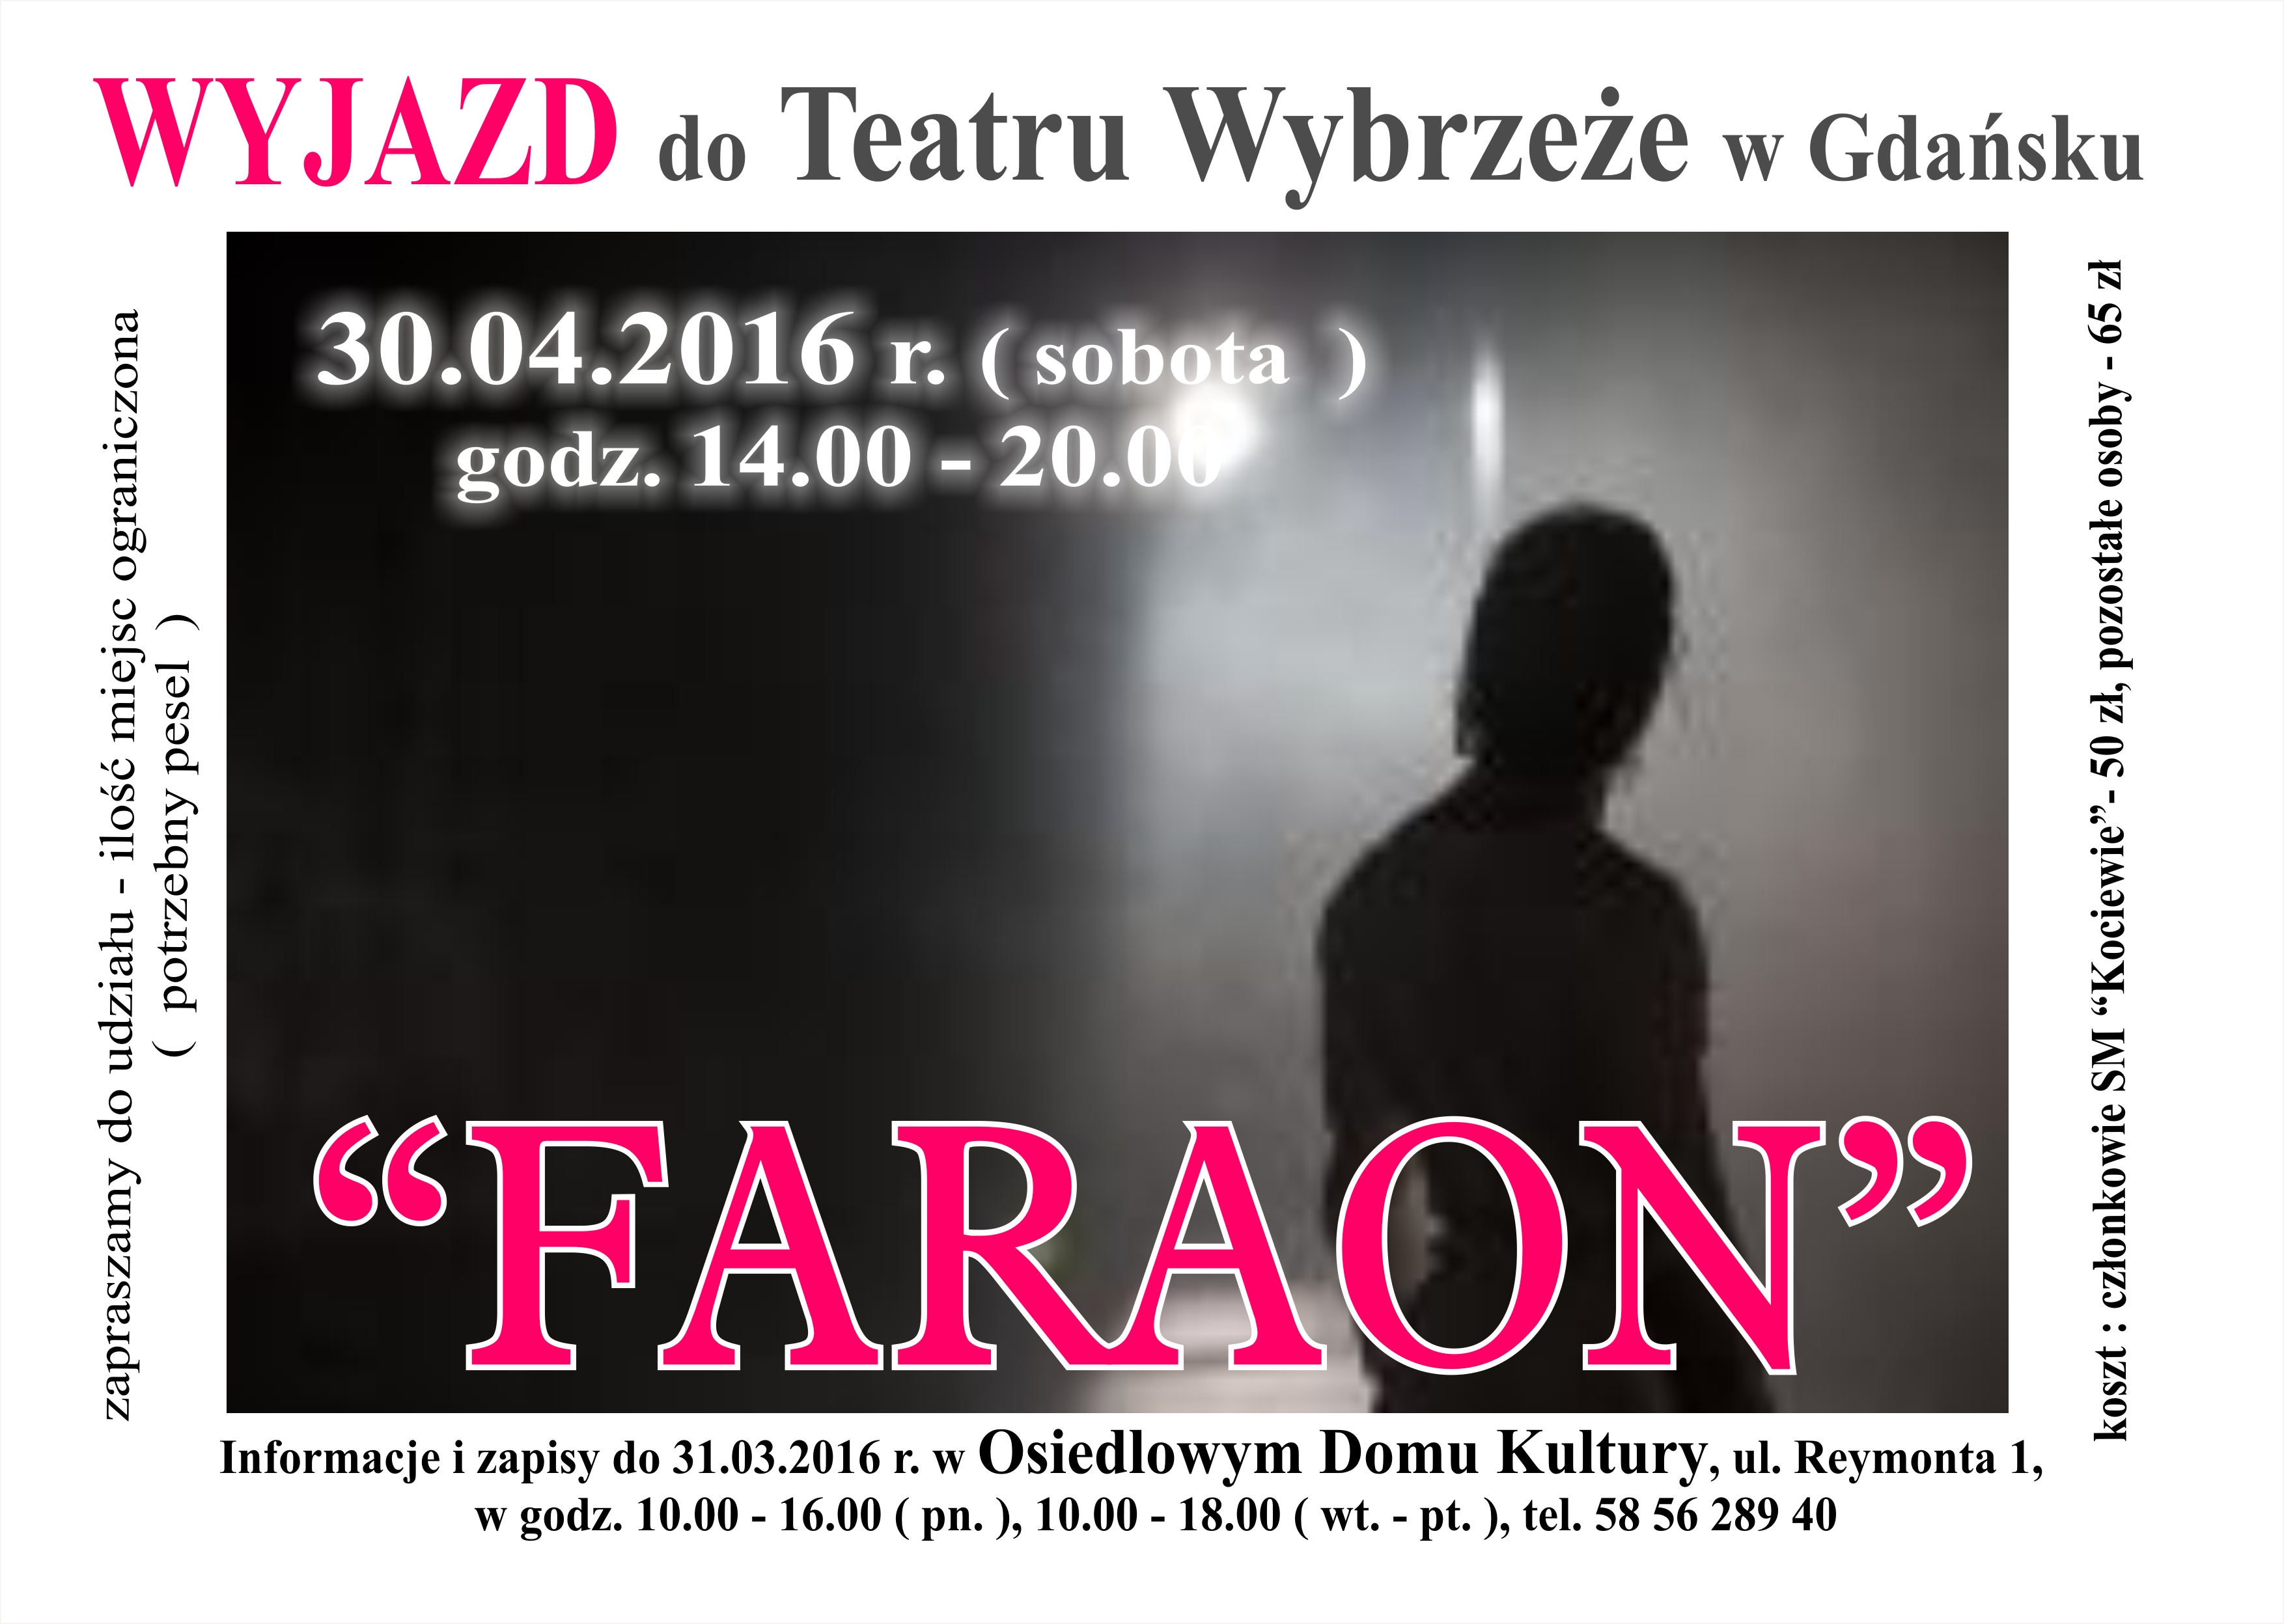 FARAON - wyjazd do Teatru Wybrzeże w Gdańsku